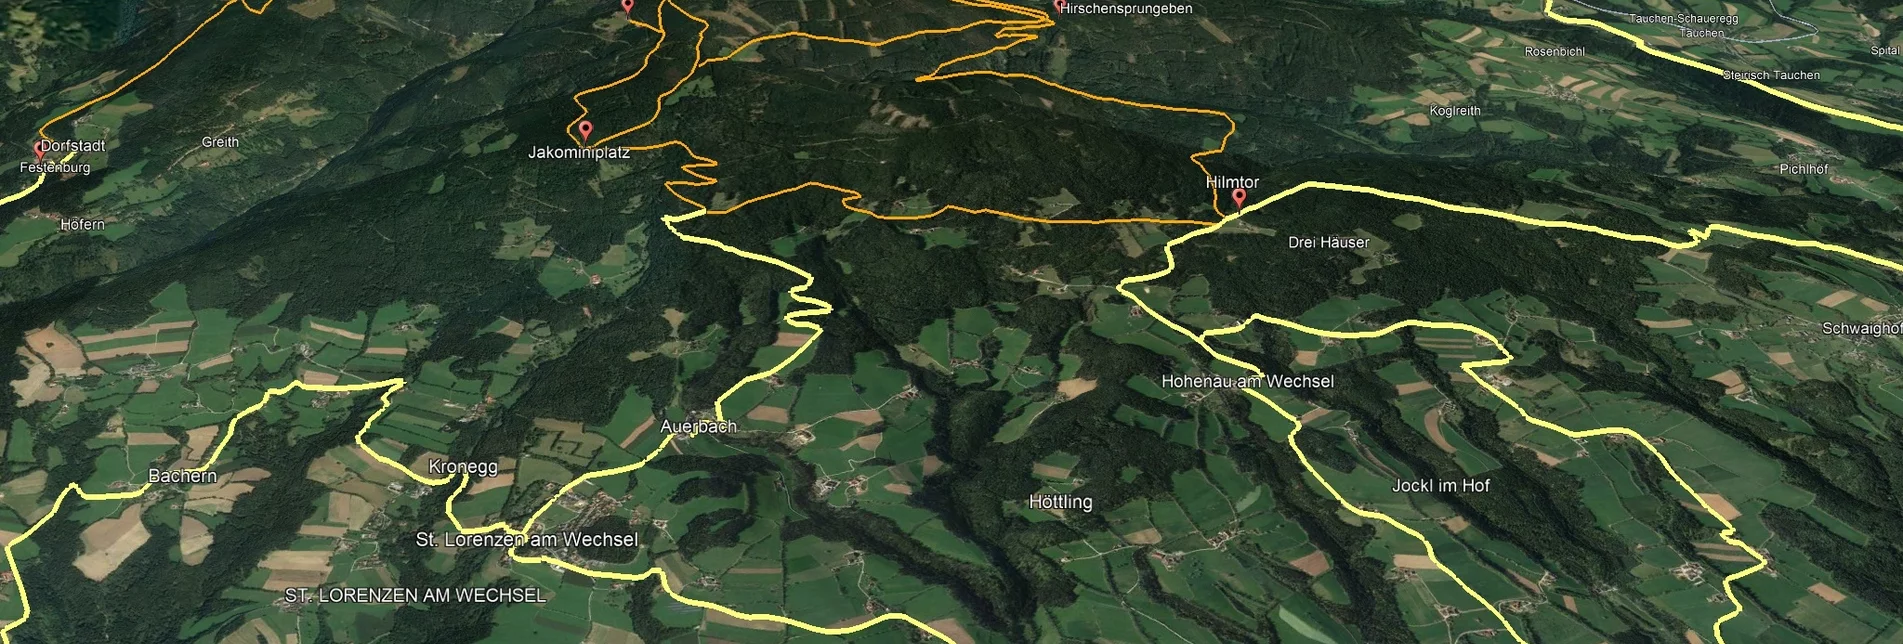 Mountainbike Steirische Wexl Trails - Kogelweg Route - Touren-Impression #1 | © Verein Tourismusentwicklung Steirischer Wechsel